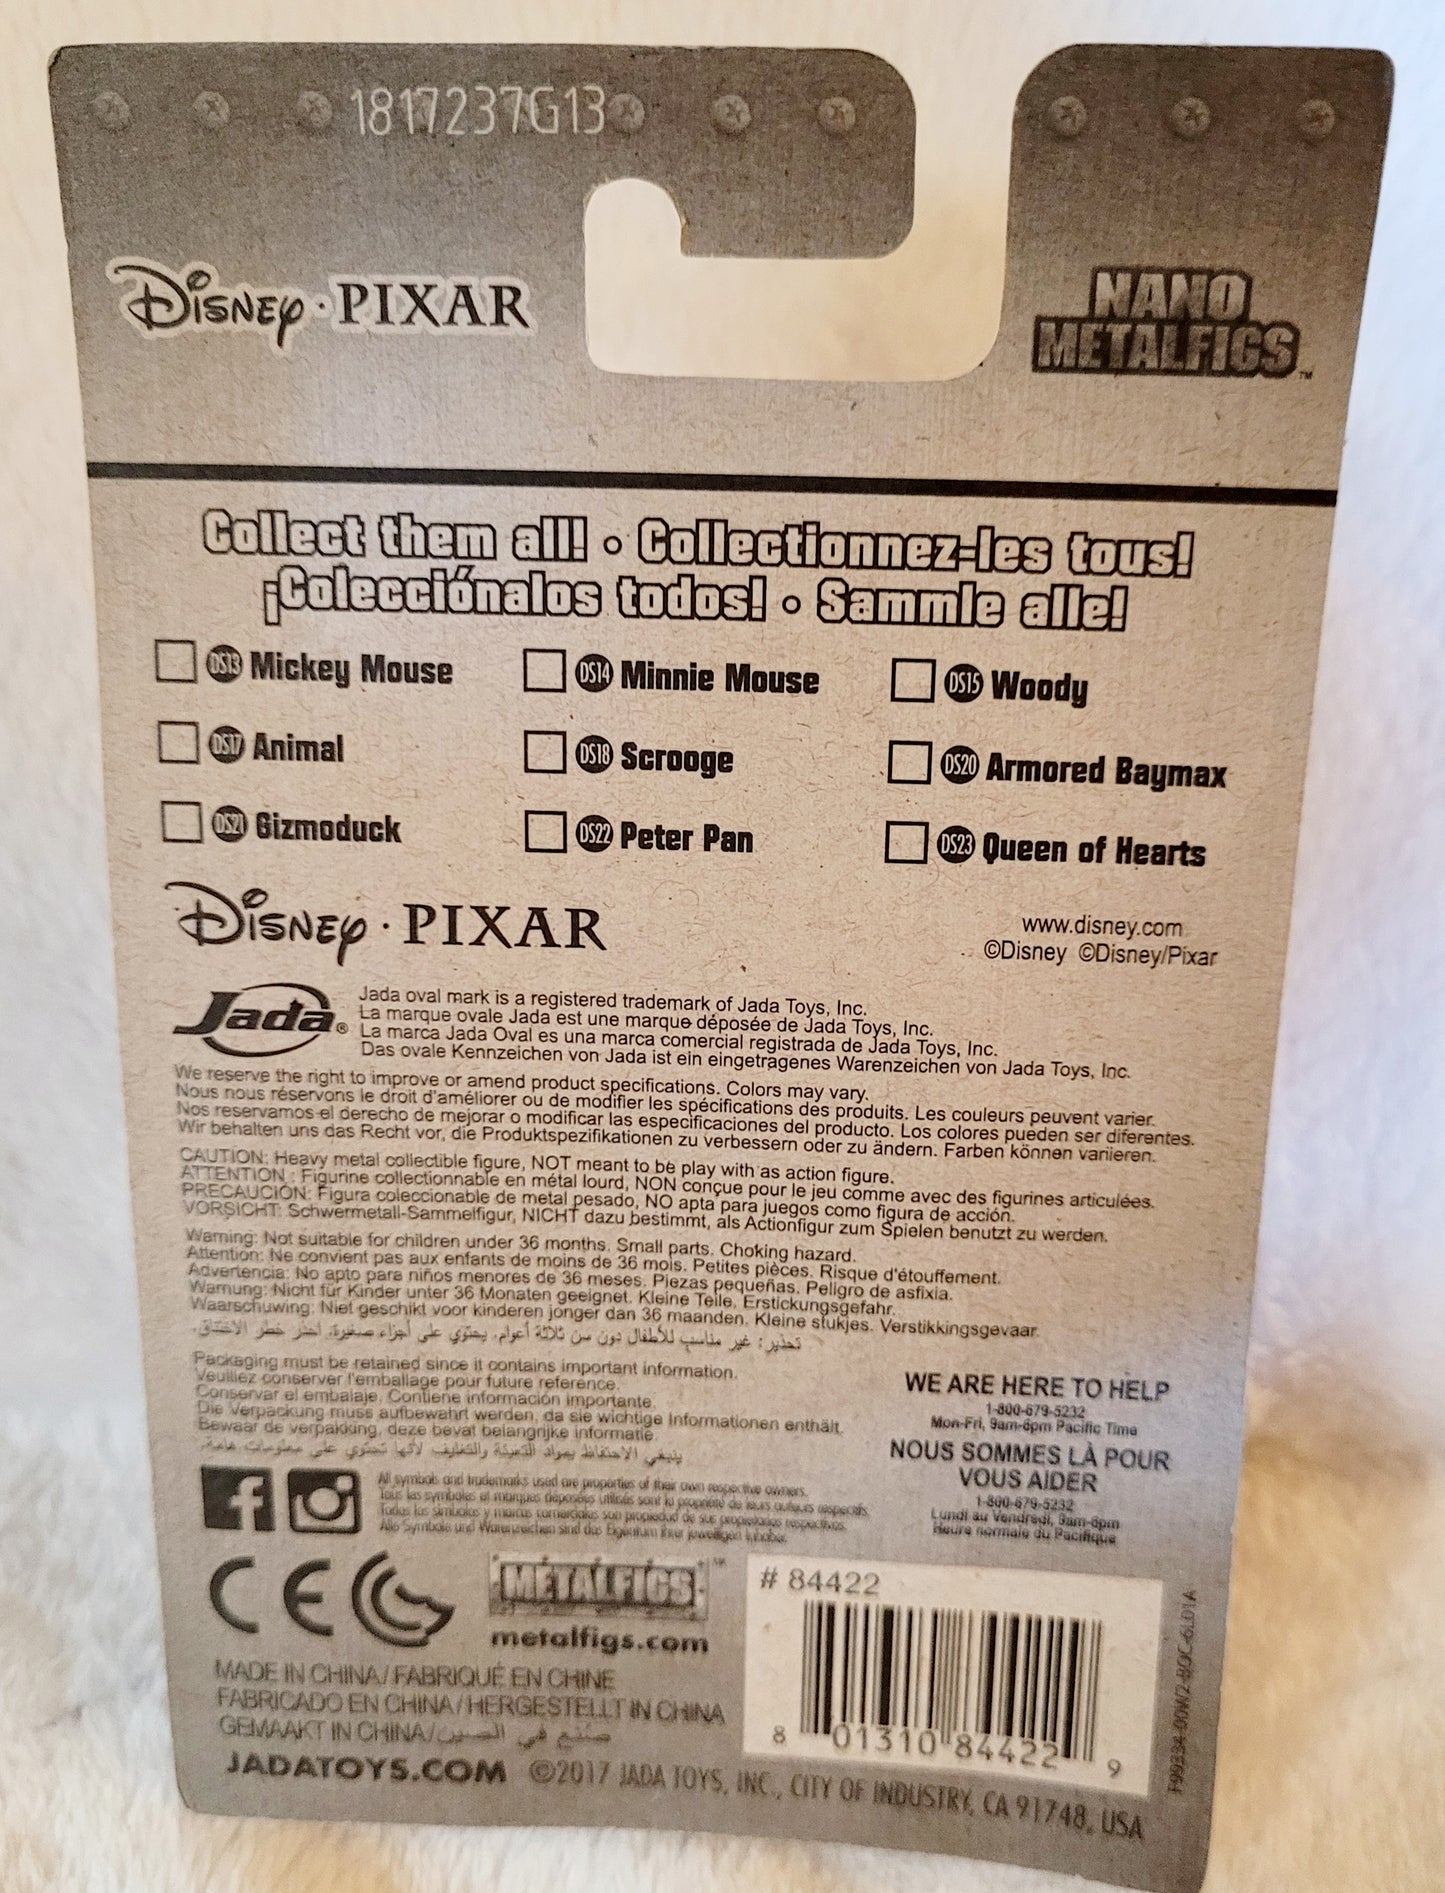 NEW *Disney Pixar Nano MetalFigs "Woody" Die-Cast